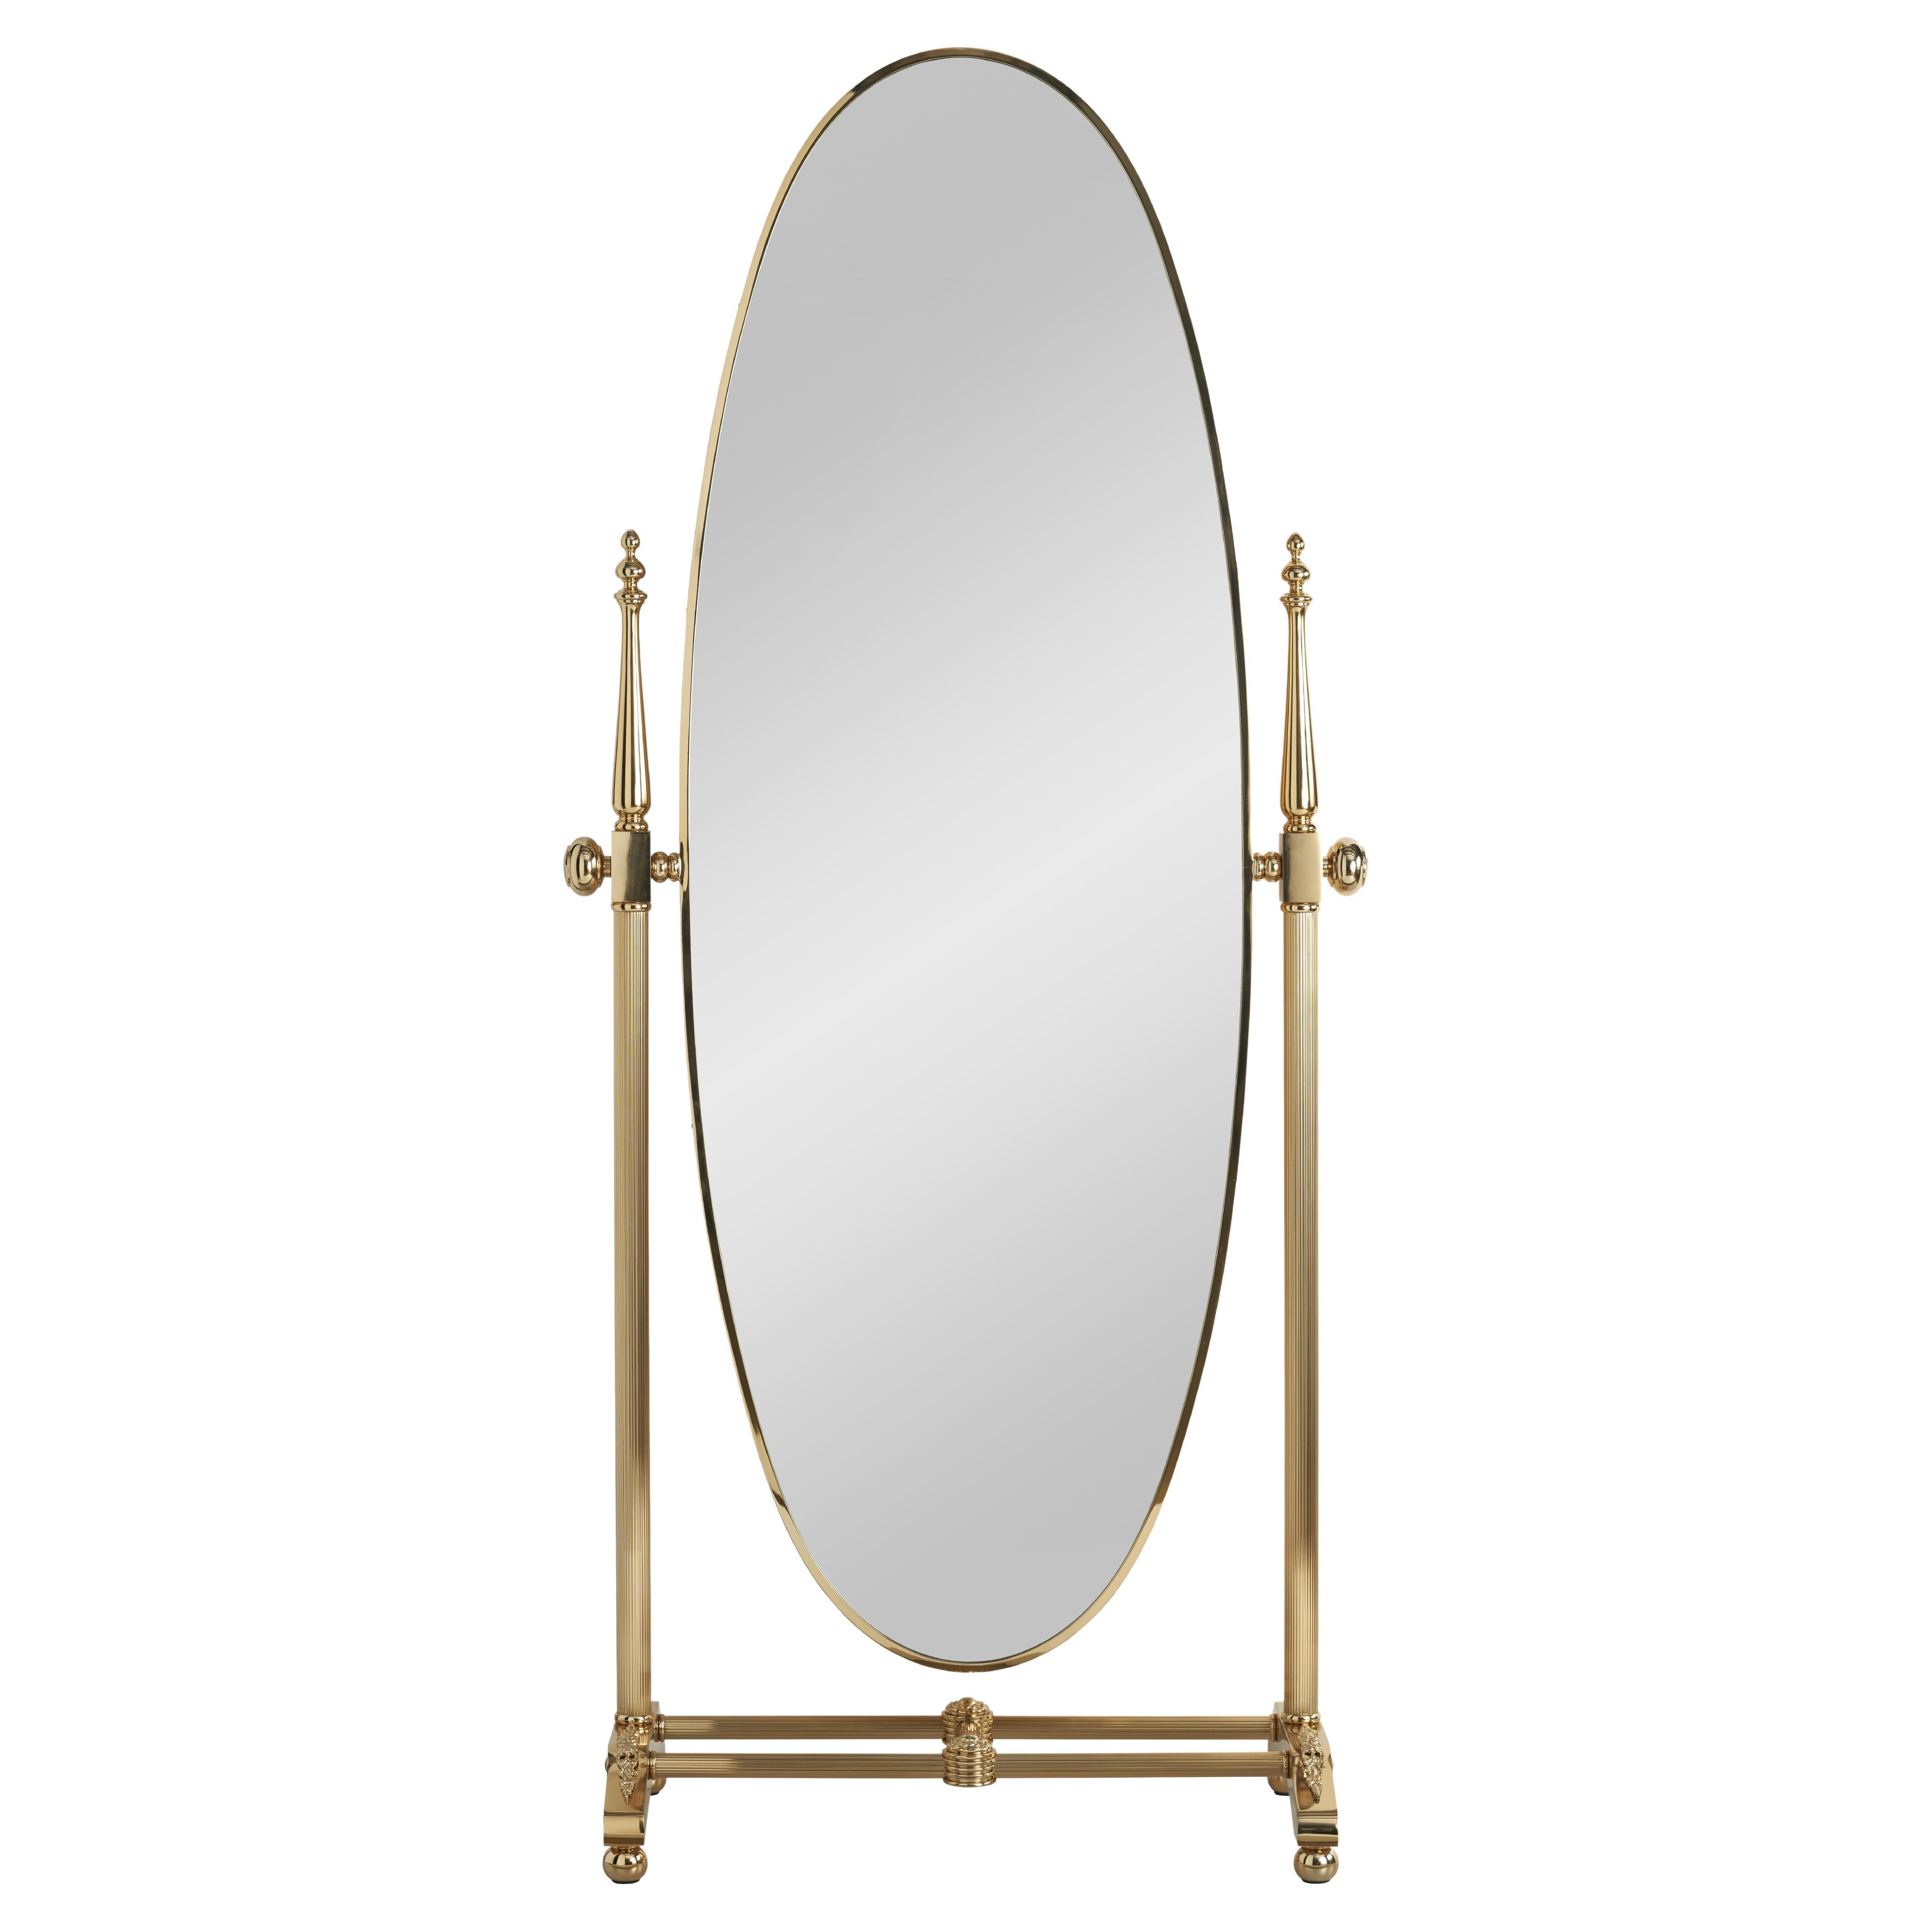 EL065 Miroir basculant autoportant